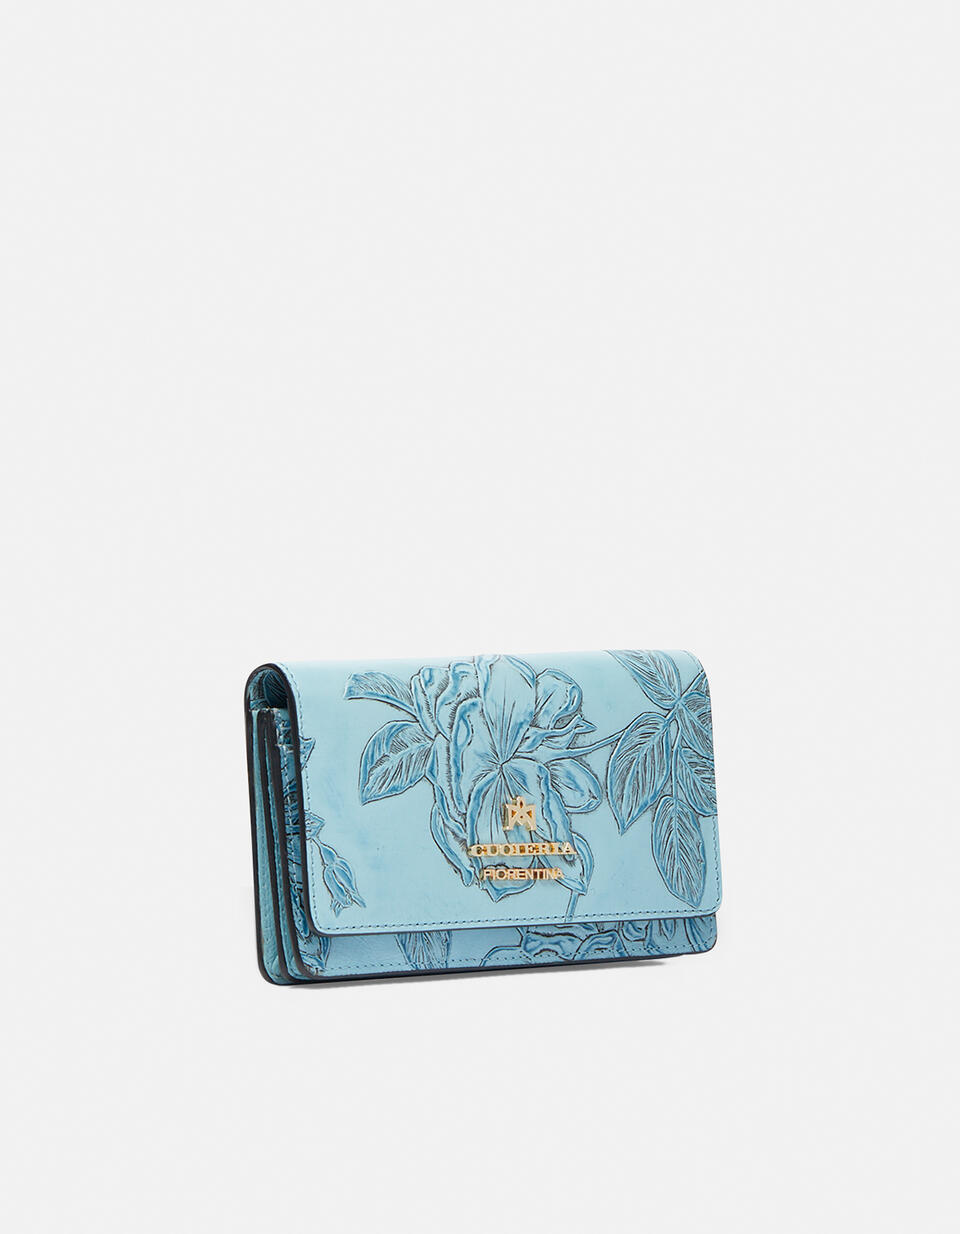 Accordian style wallet  - Women's Wallets - Women's Wallets - Wallets - Cuoieria Fiorentina